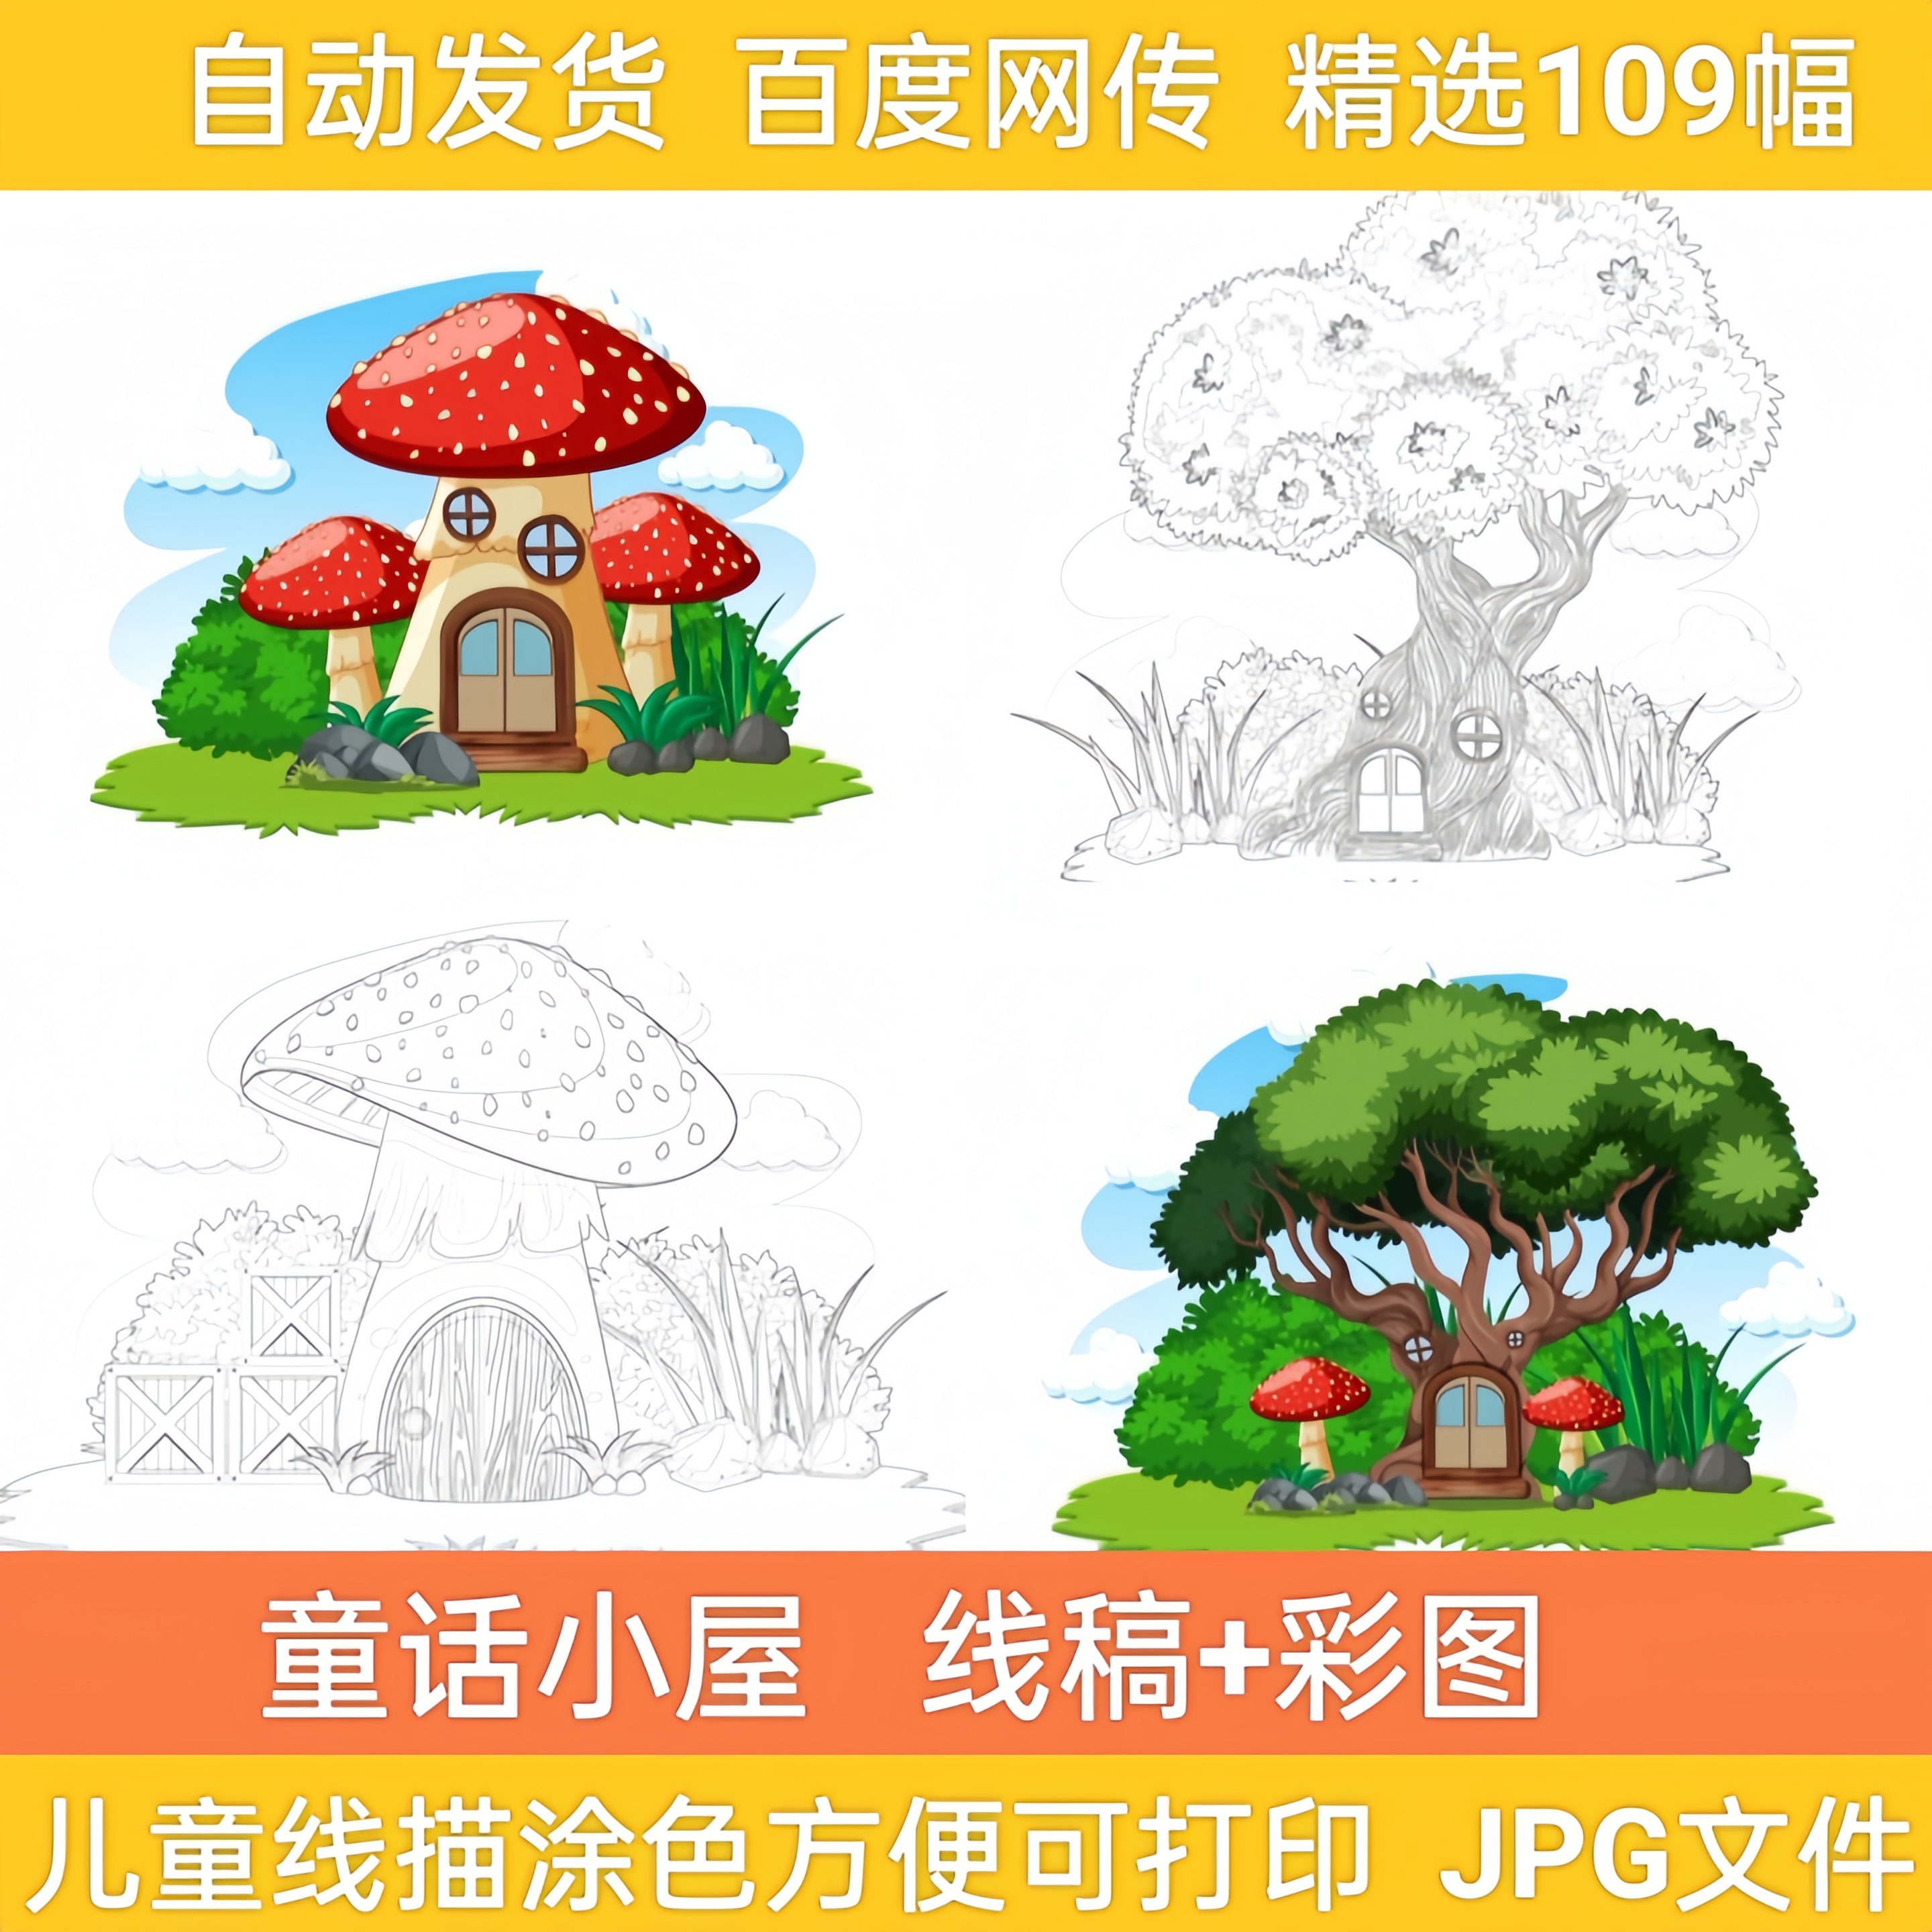 卡通森林蘑菇房子精灵屋线稿线描简笔画儿童涂色电子版图素材